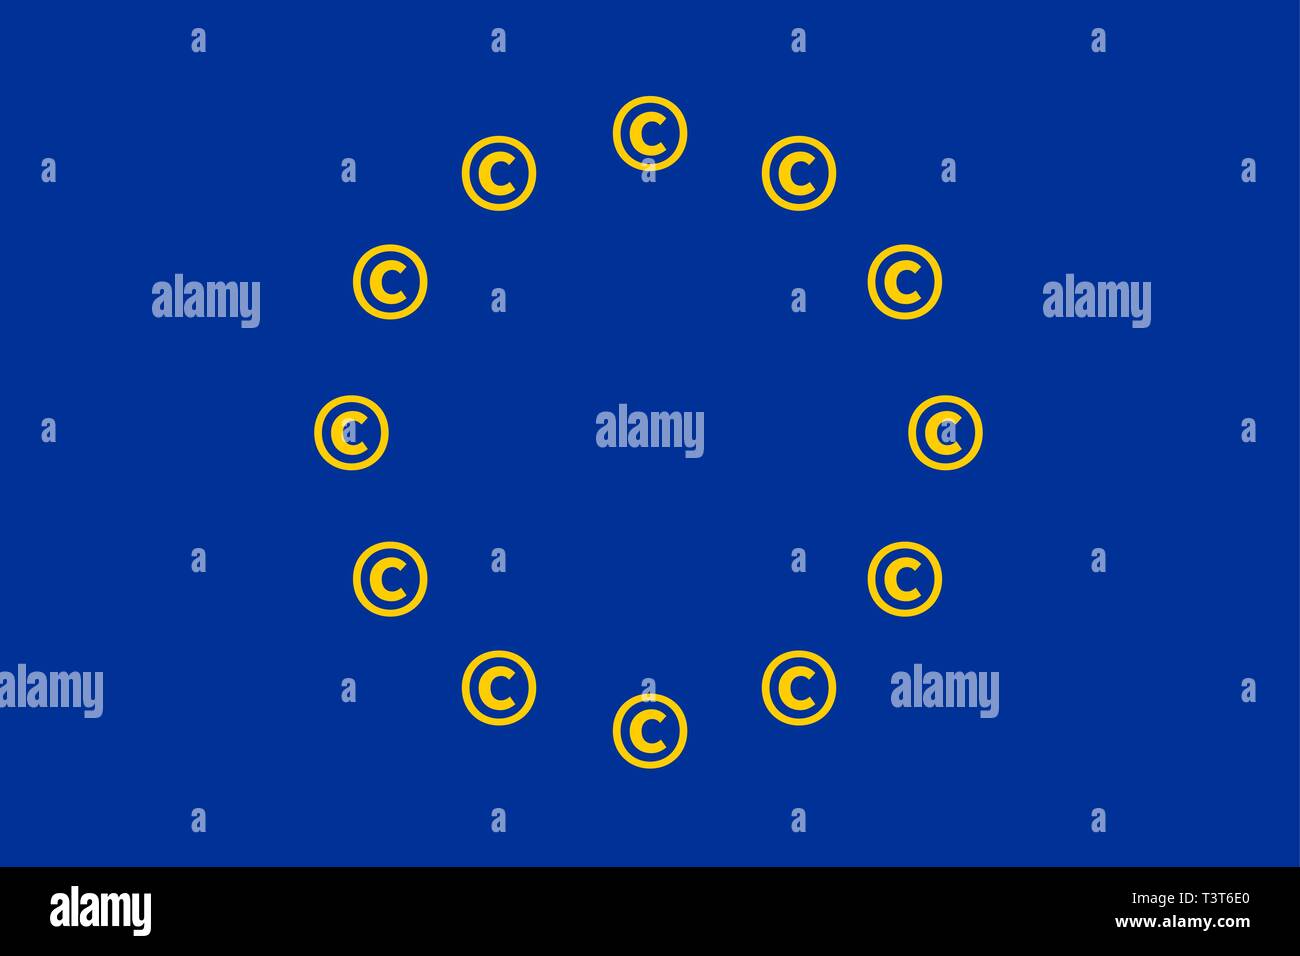 Drapeau de l'Union européenne avec les symboles au lieu d'étoiles d'auteur Illustration de Vecteur